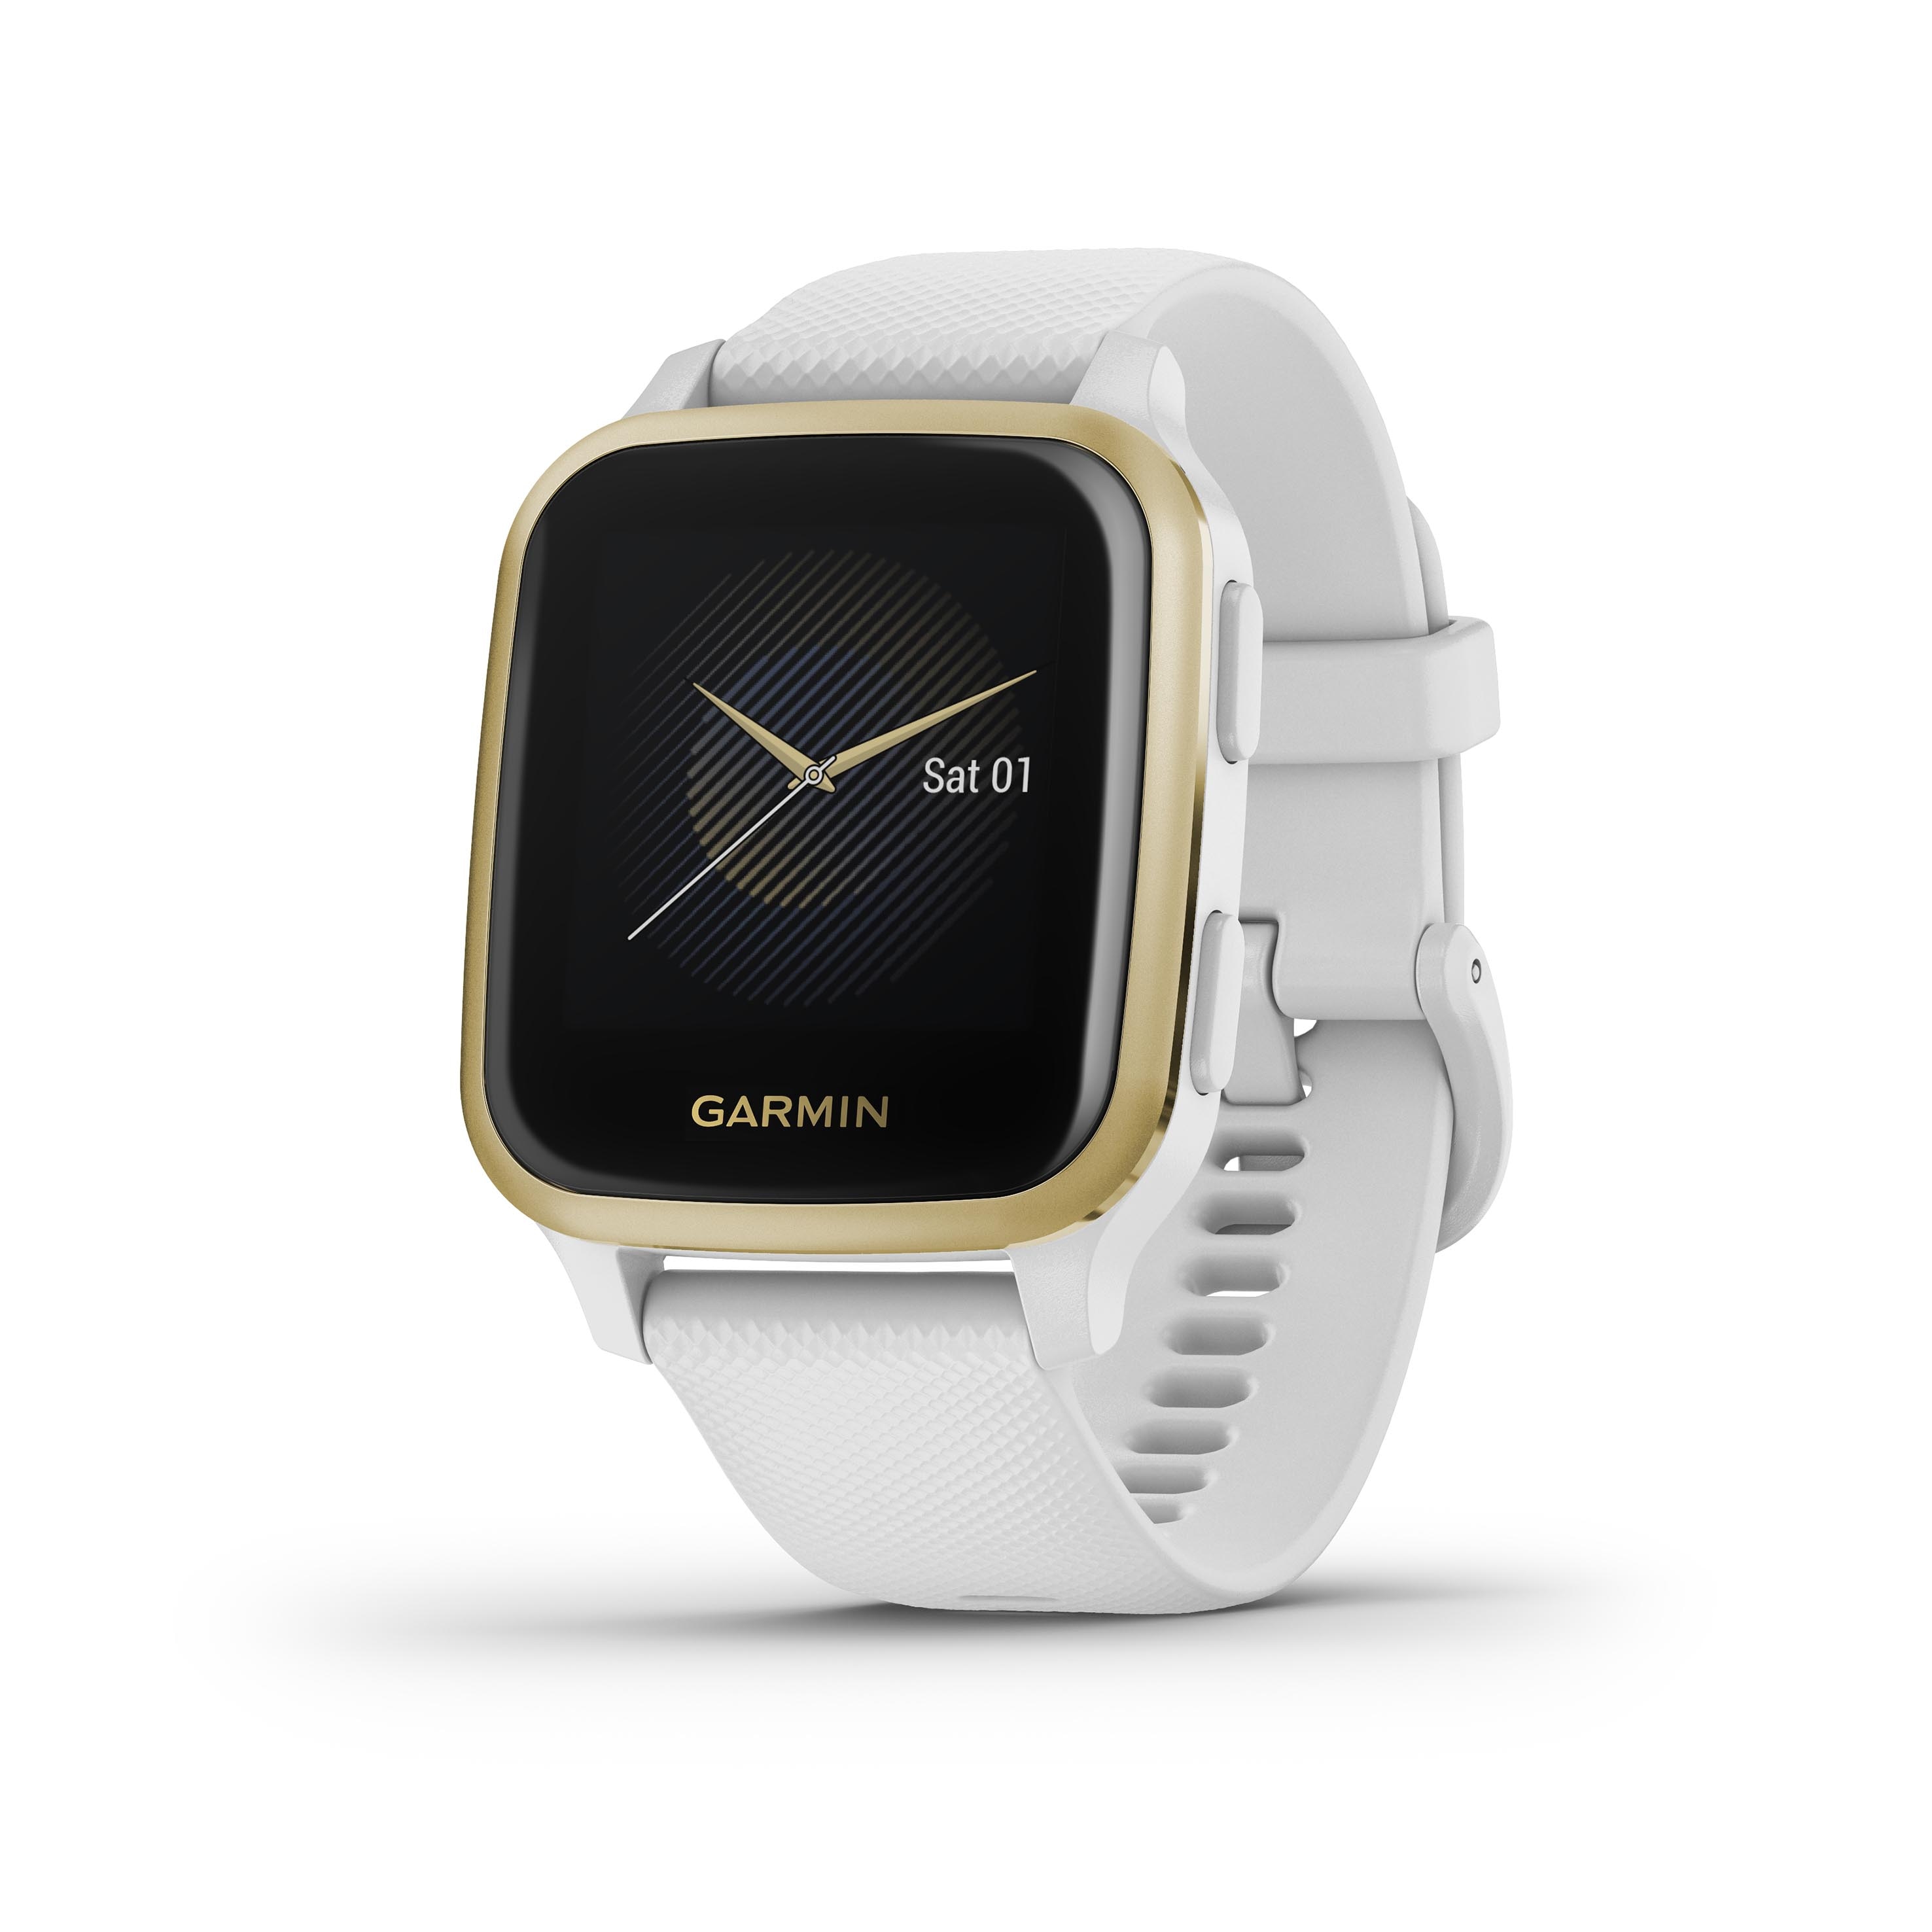 Garmin lancia due nuovi smartwatch perfetti per ogni tipo di